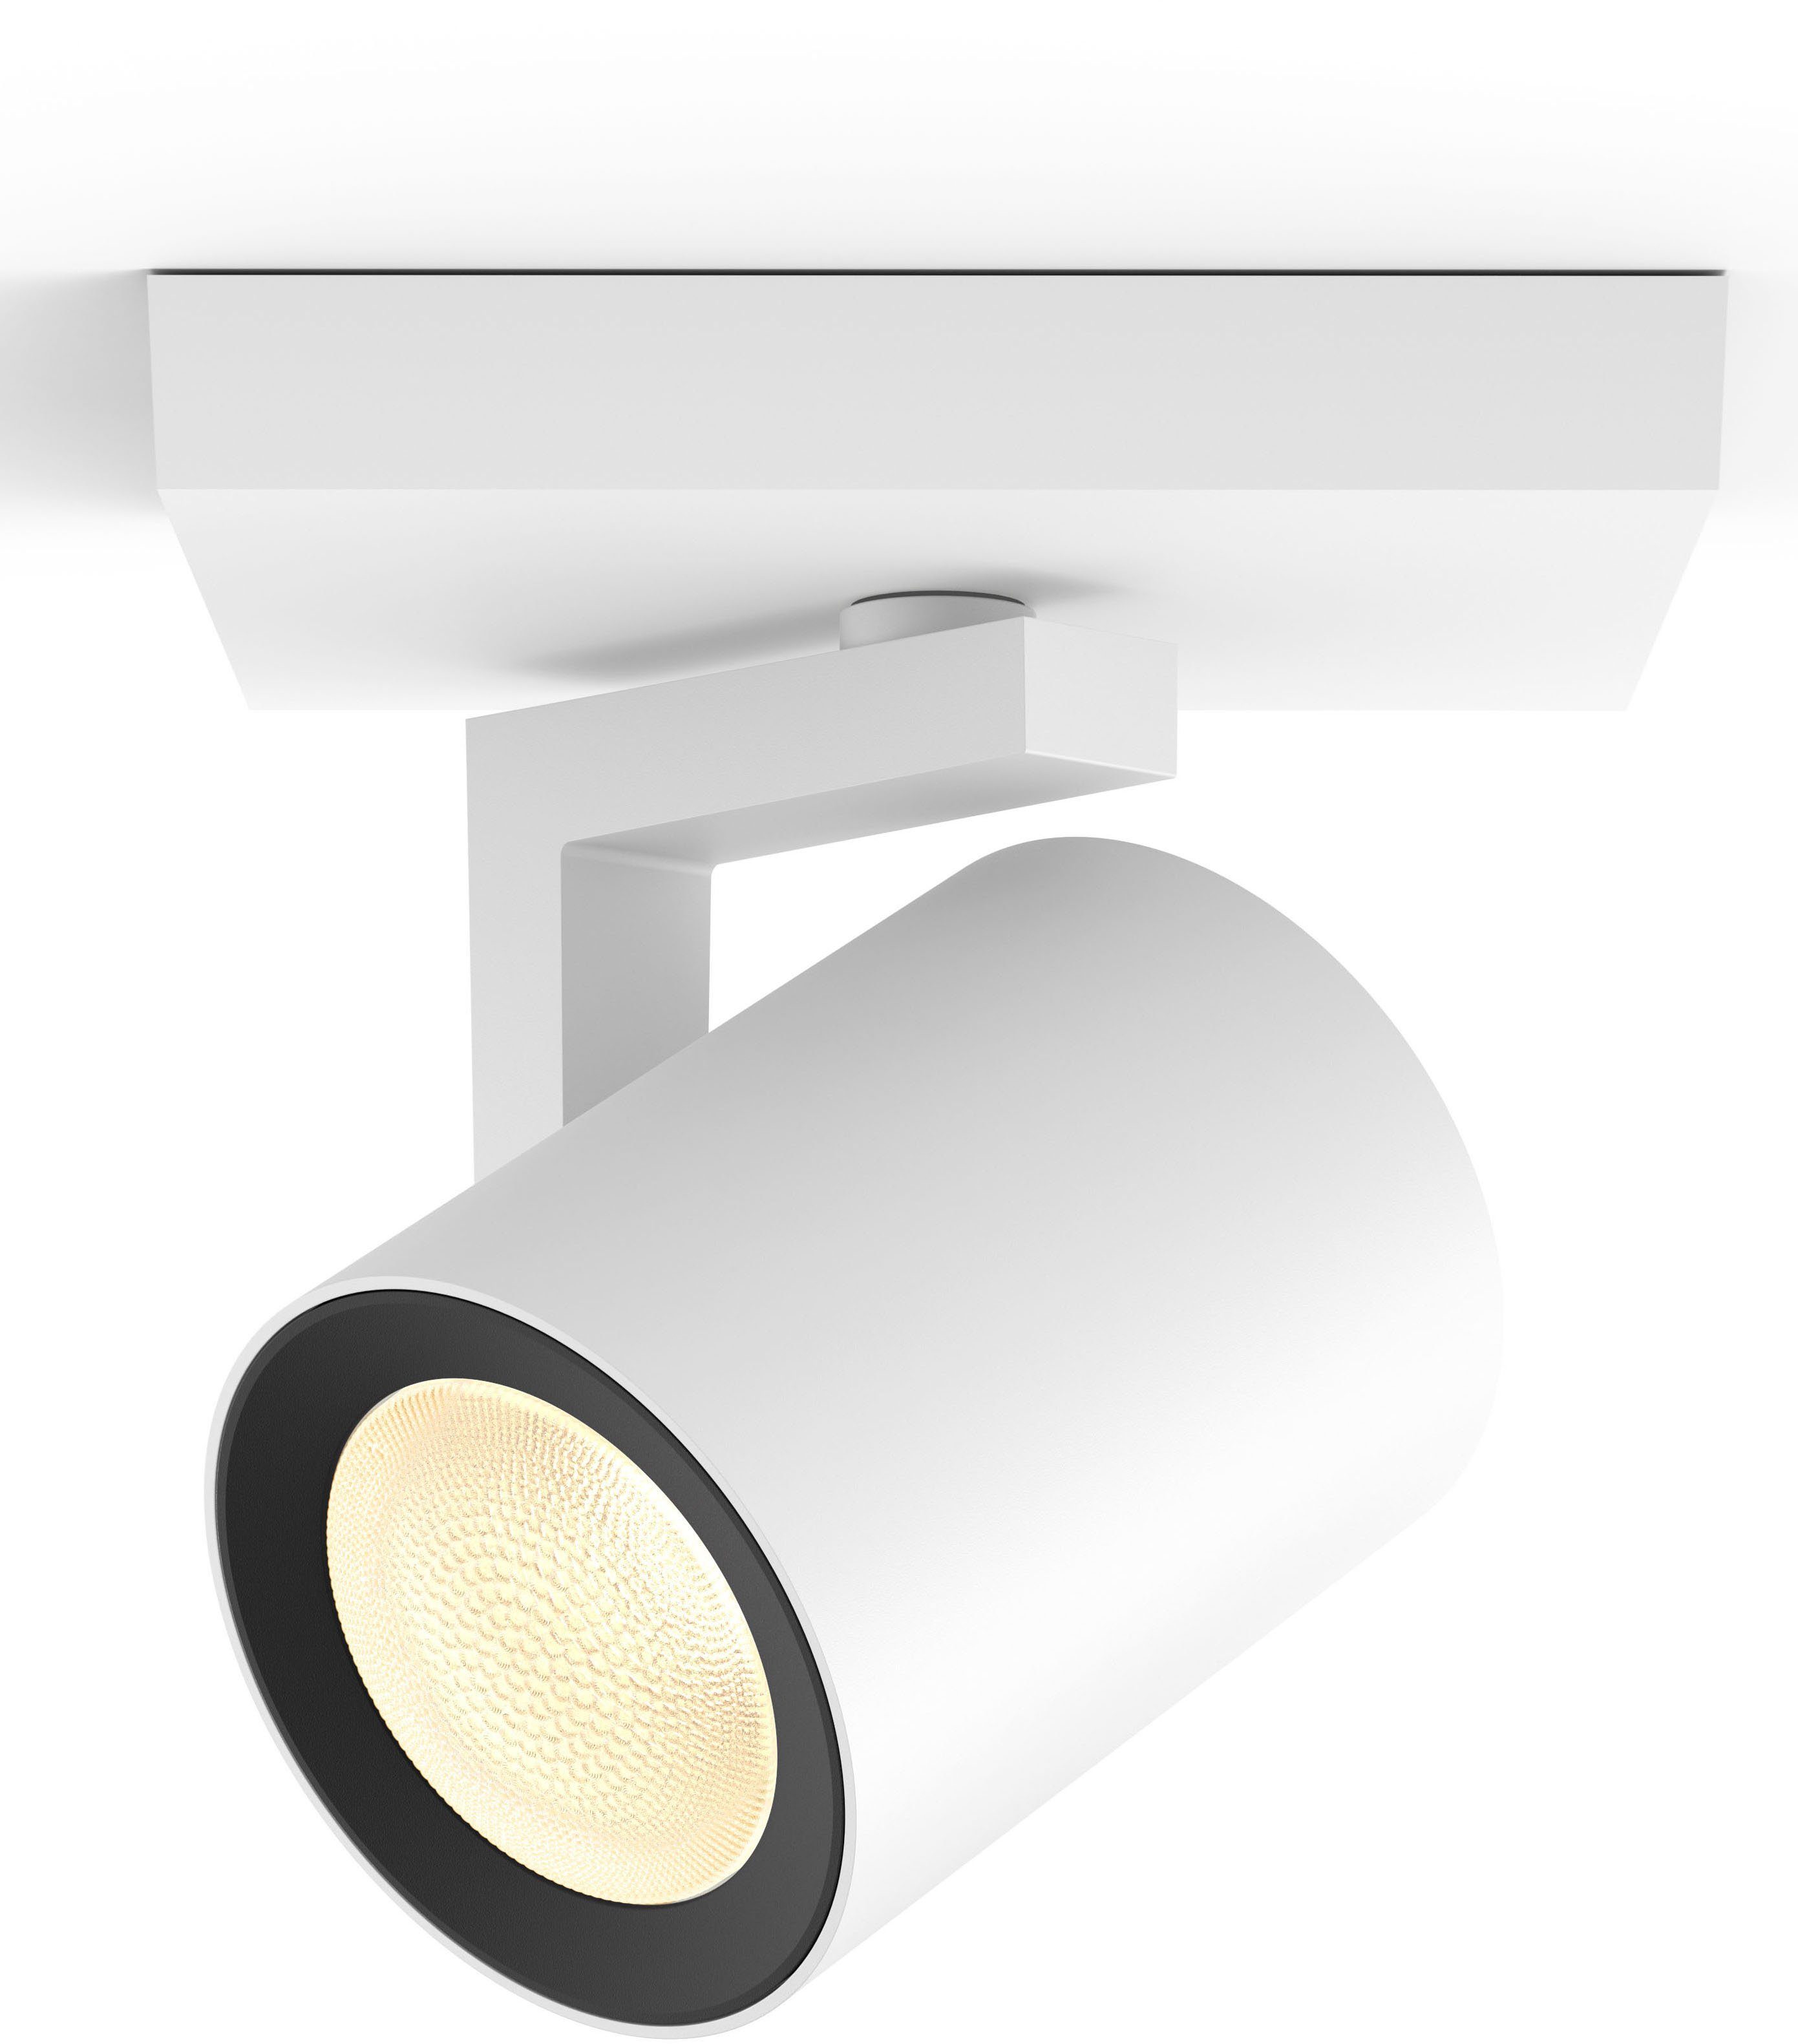 Philips Hue LED Deckenspot Argenta, Smart Extra-Warmweiß, Neutralweiß, wechselbar, Leuchtmittel Home, Warmweiß Kaltweiß, Tageslichtweiß